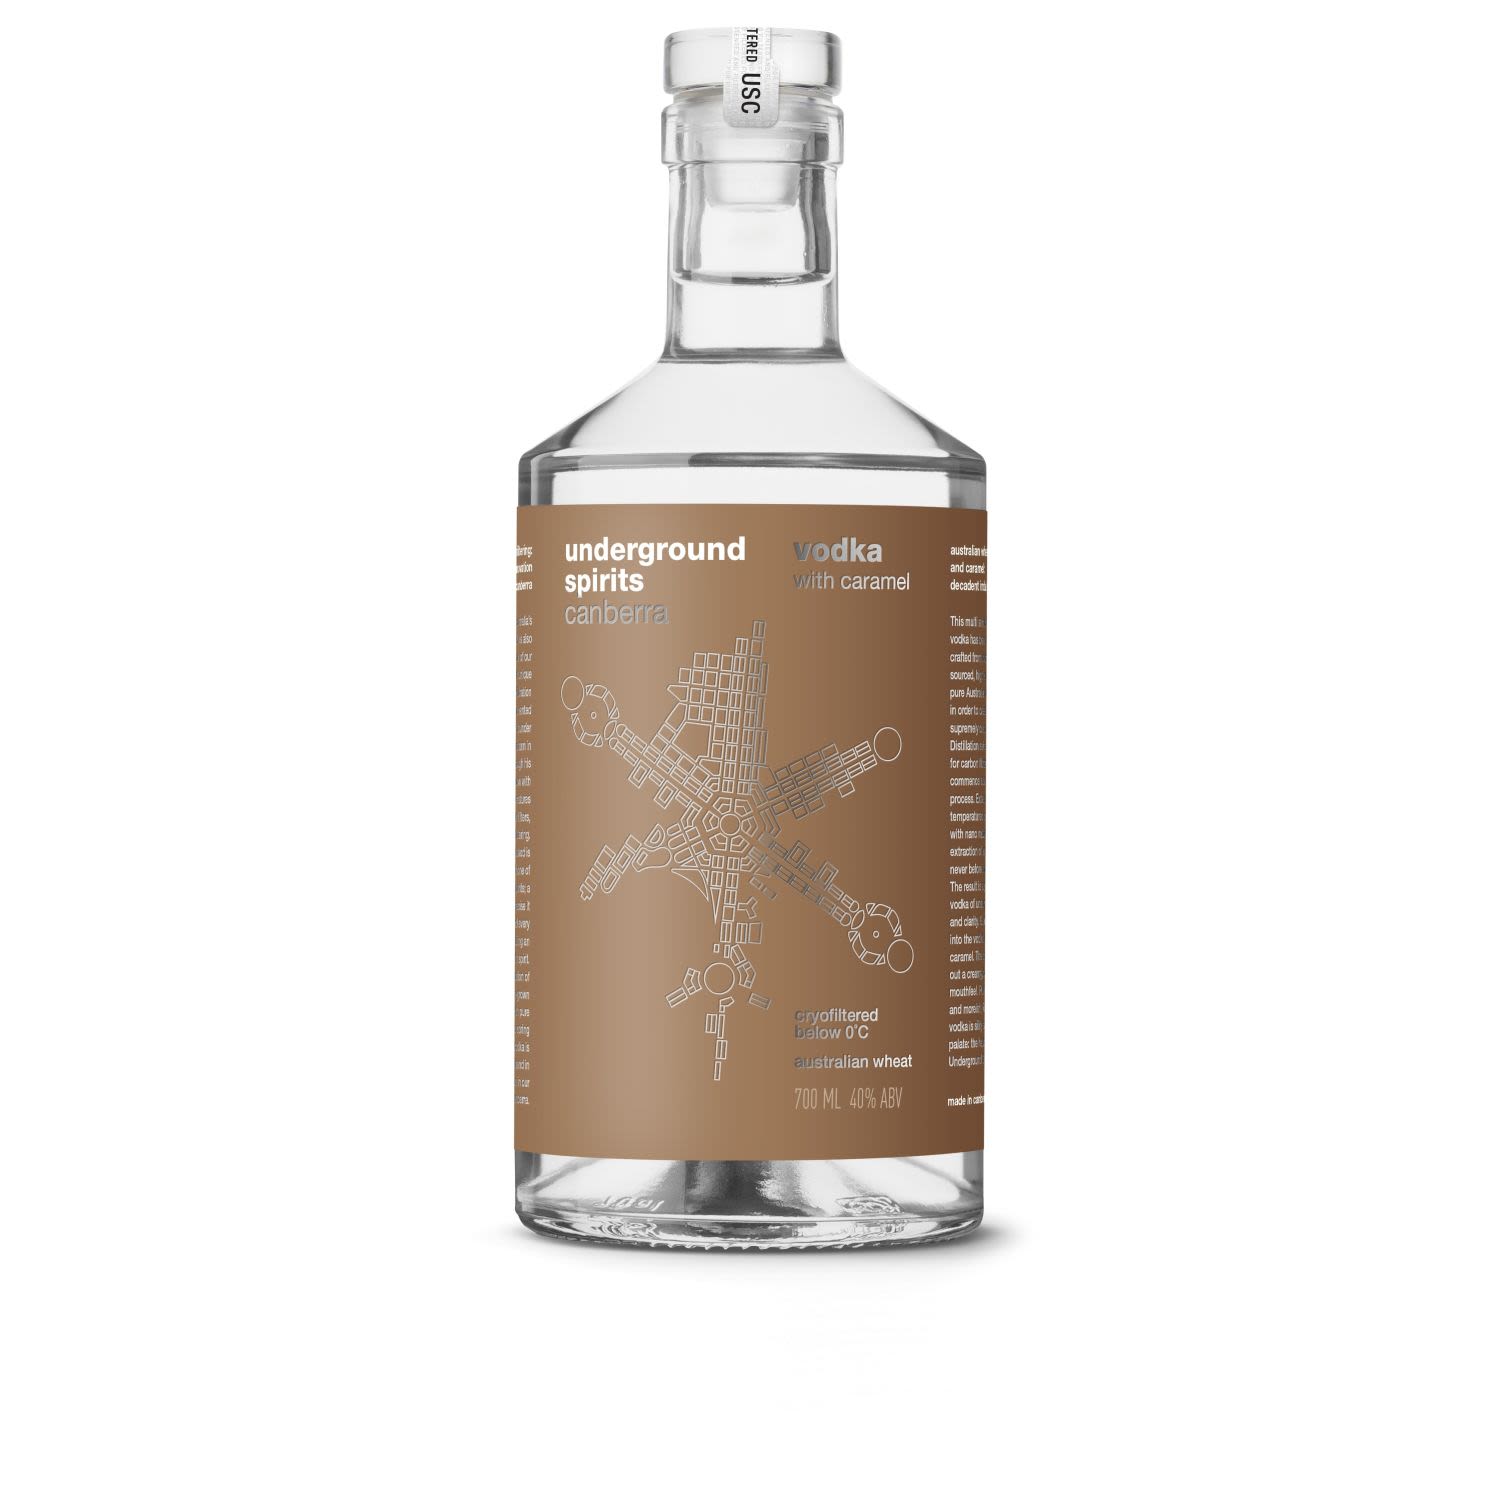 Underground Spirits Vodka with Caramel 700mL Bottle